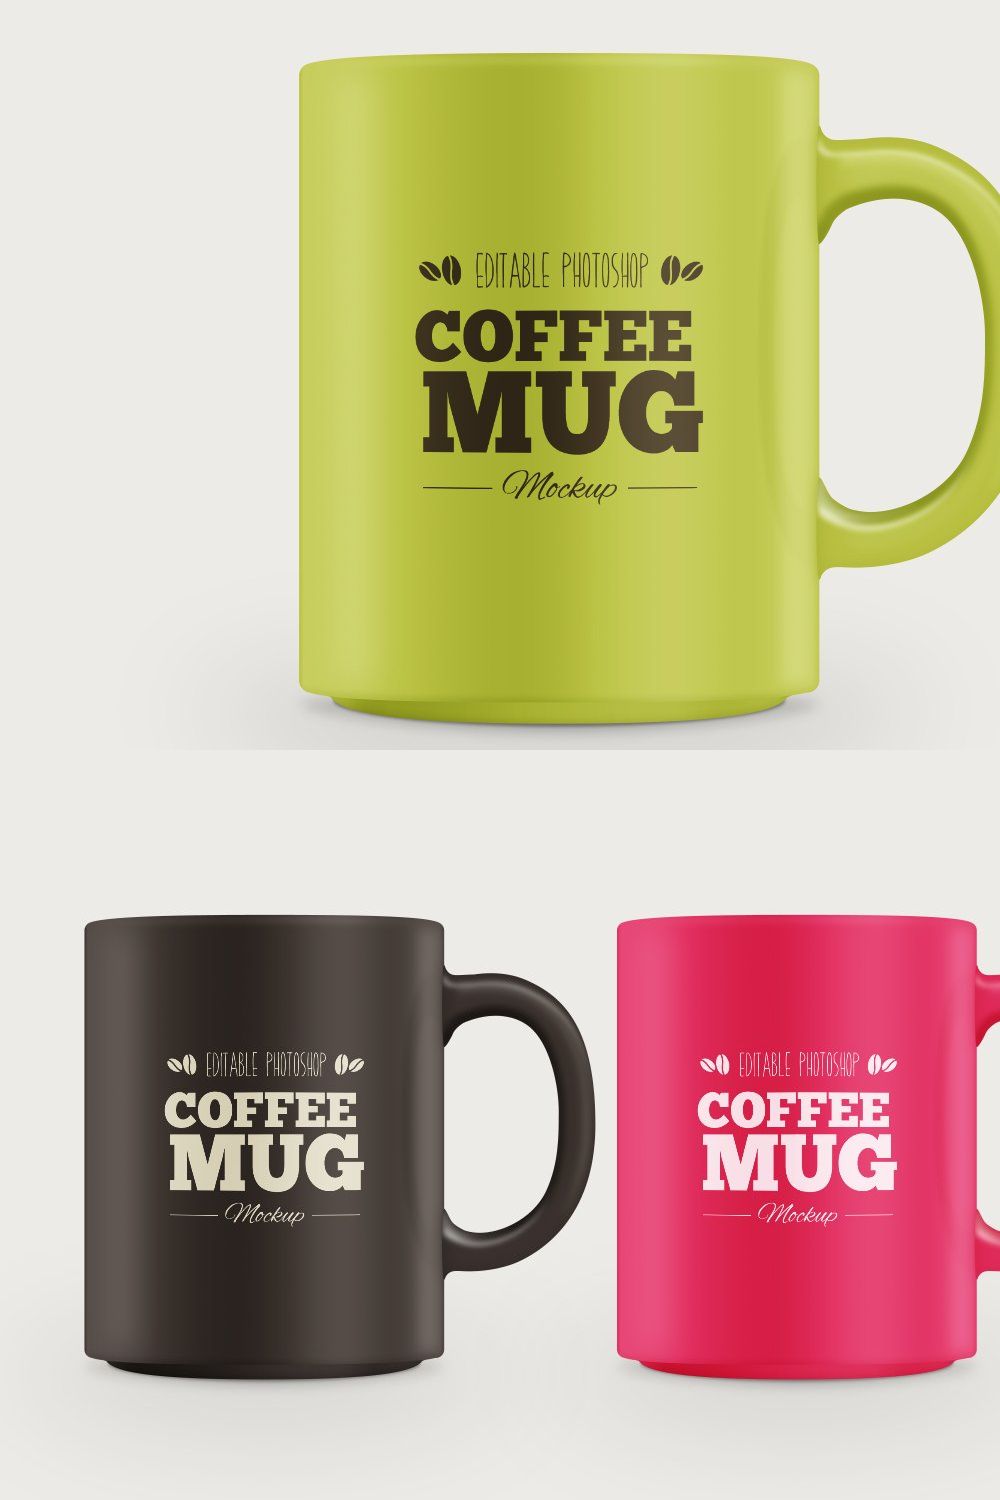 Coffee Mug Mockup pinterest preview image.